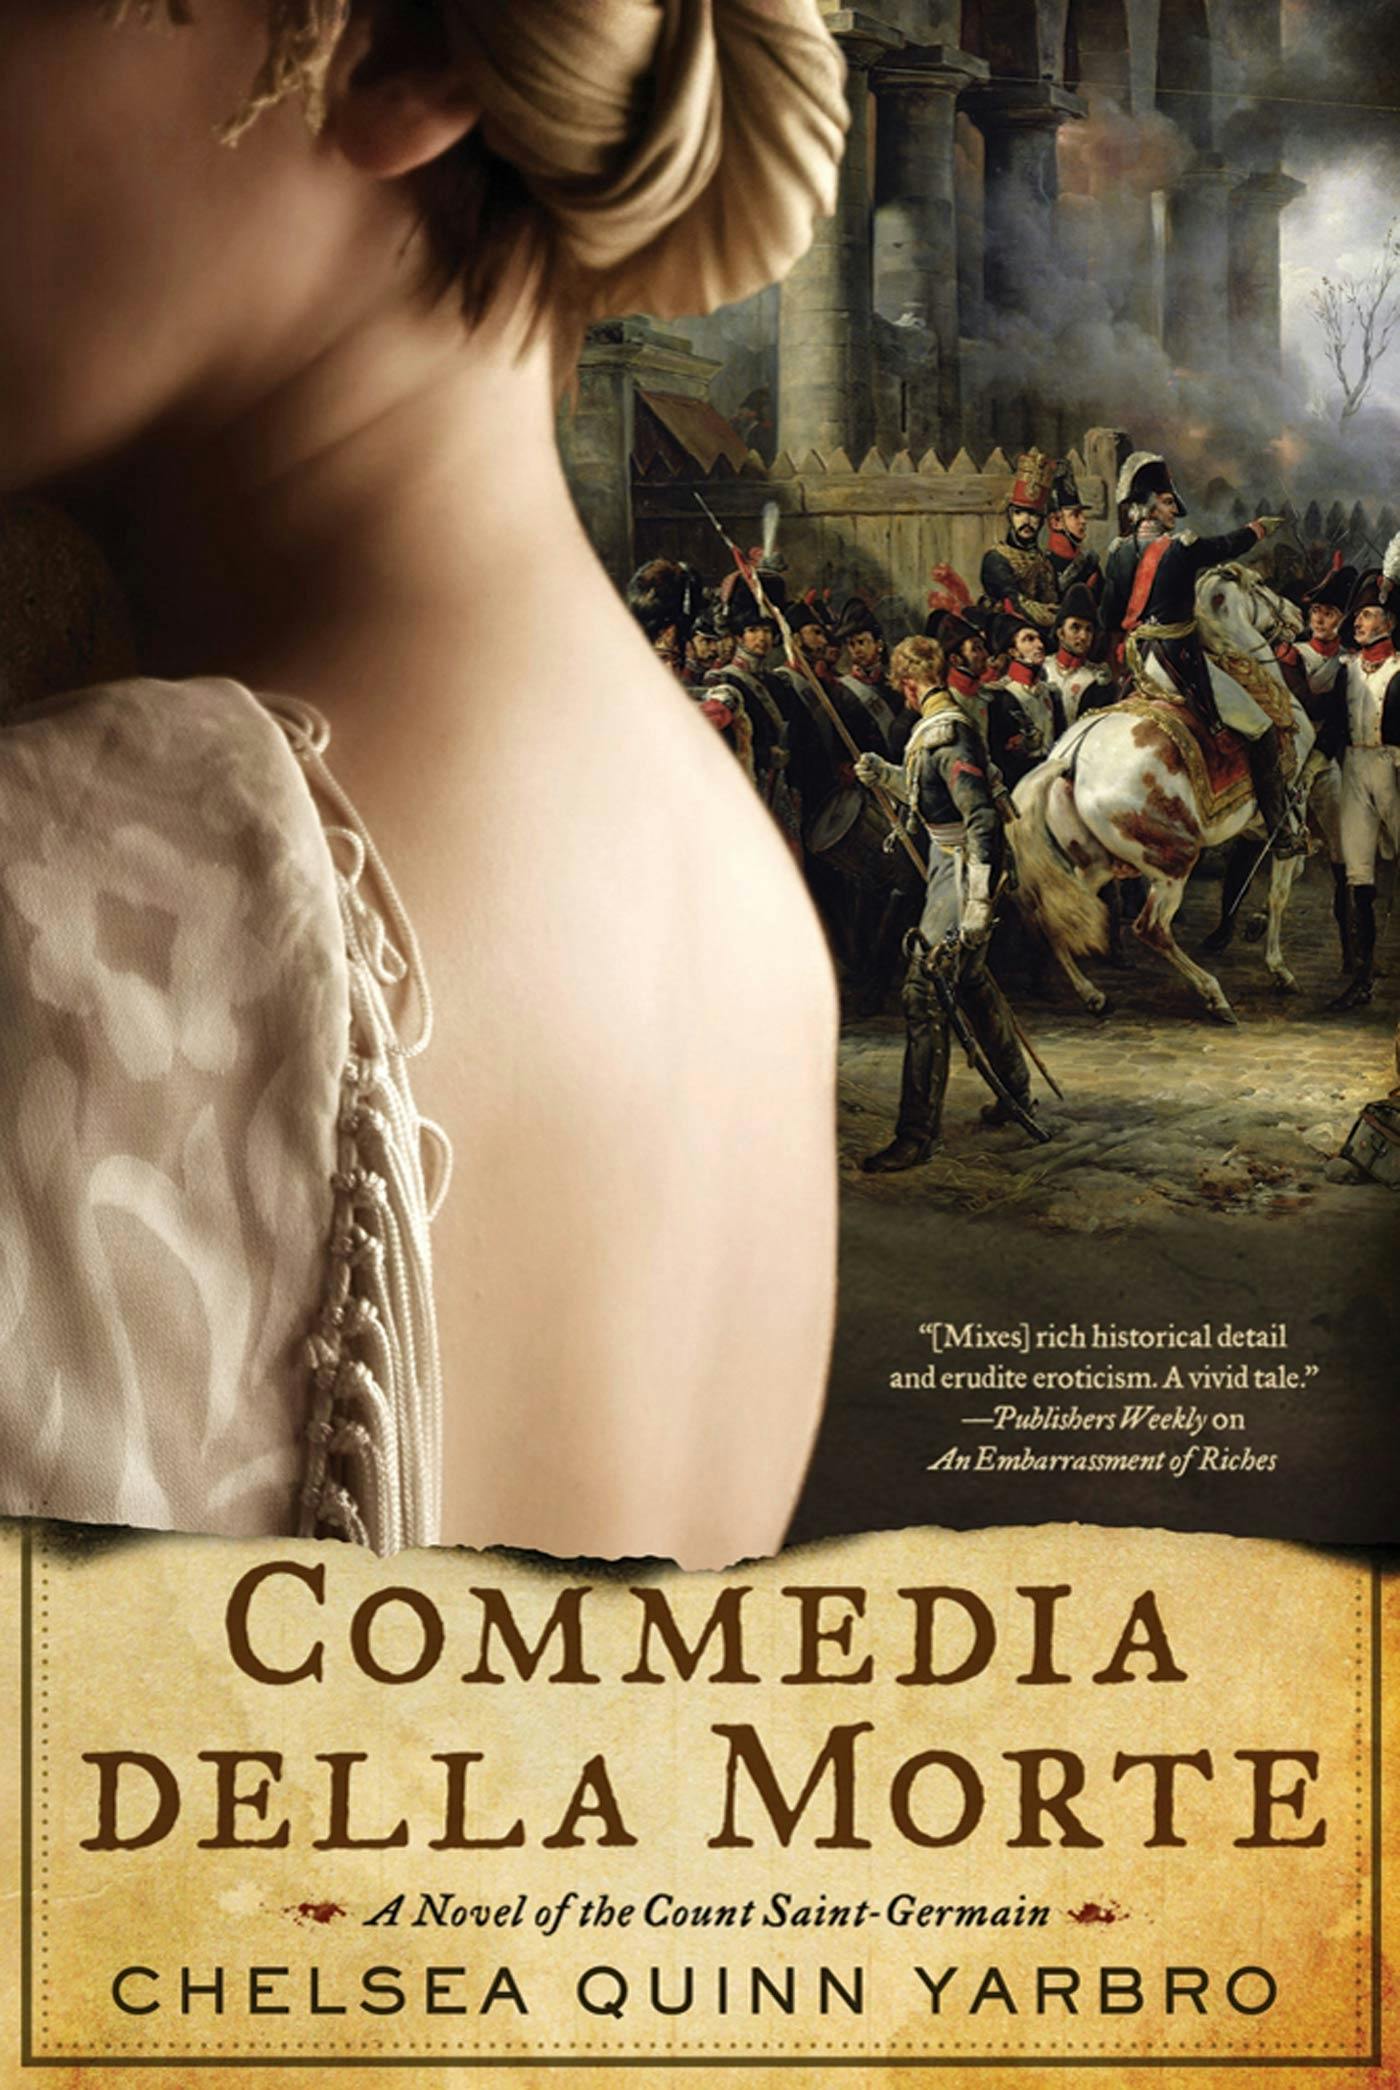 Cover for the book titled as: Commedia della Morte